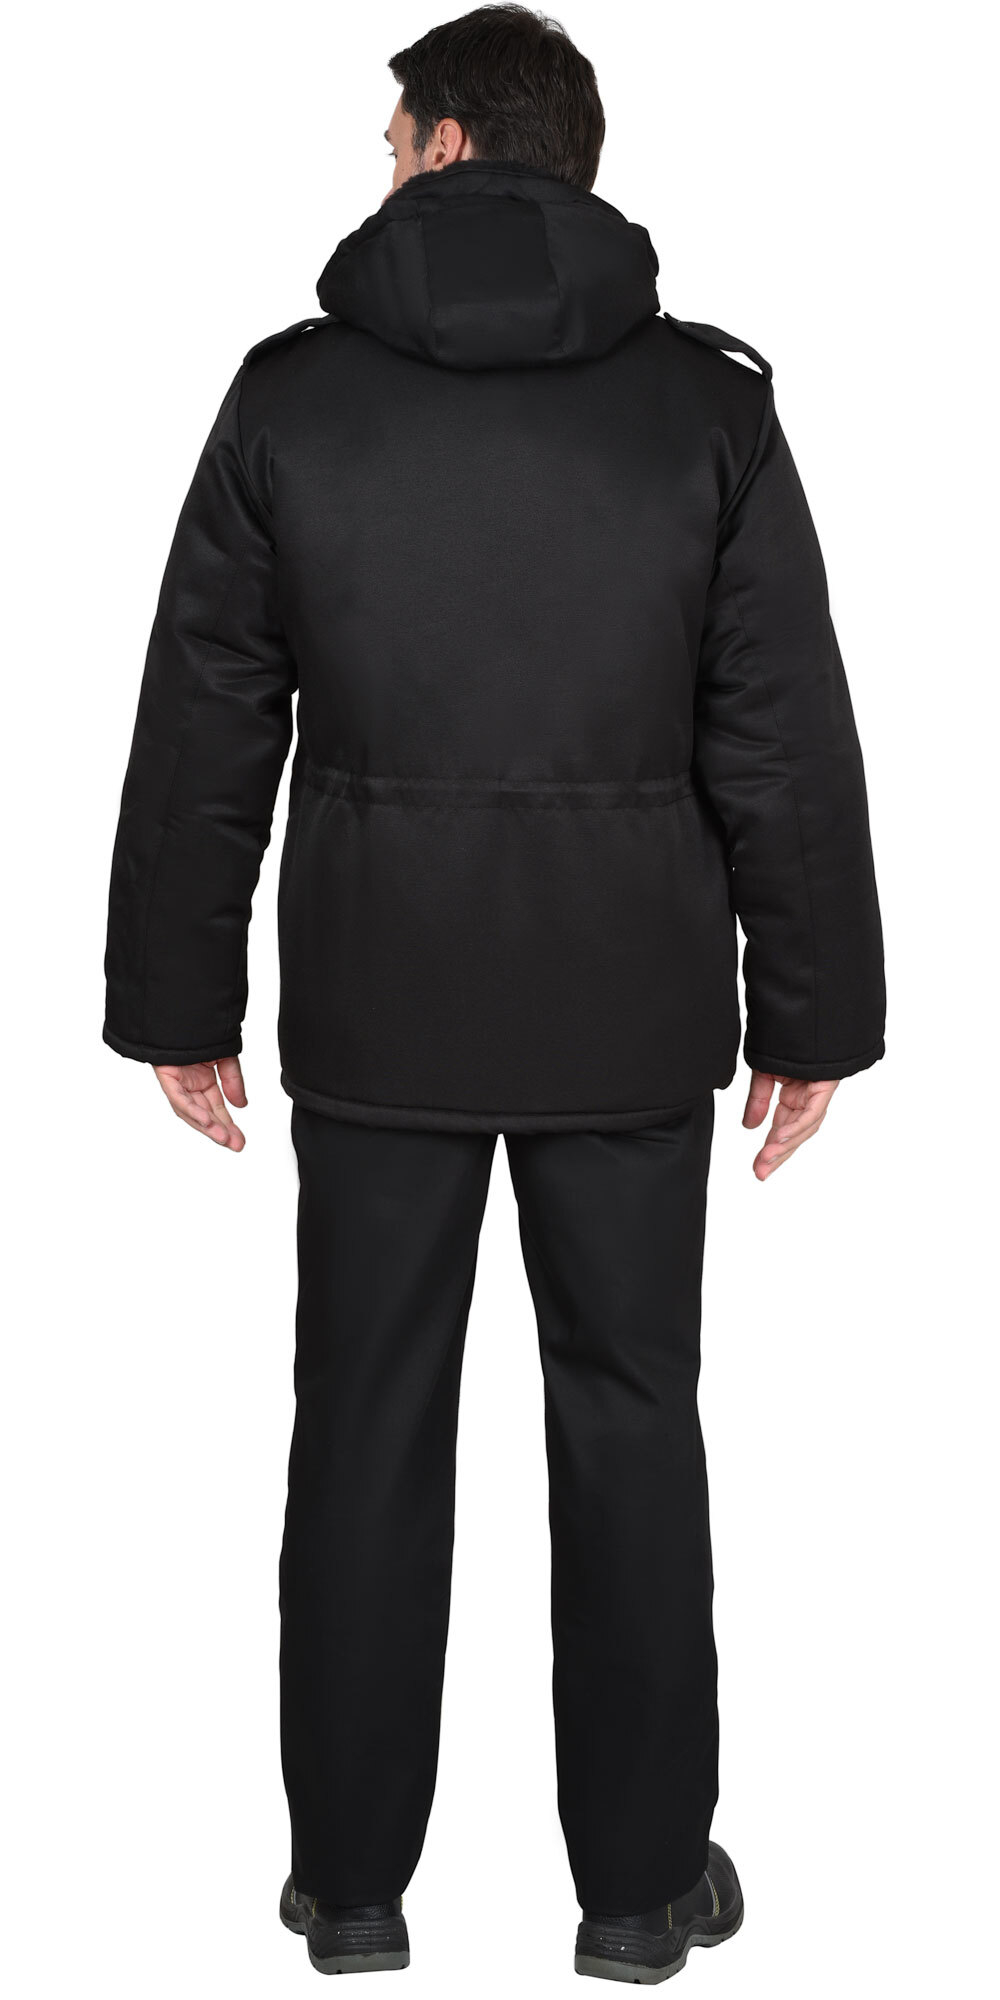 Куртка "Безопасность" зимняя,удлиненная, чёрная (ЧЗ) тк. Гретта